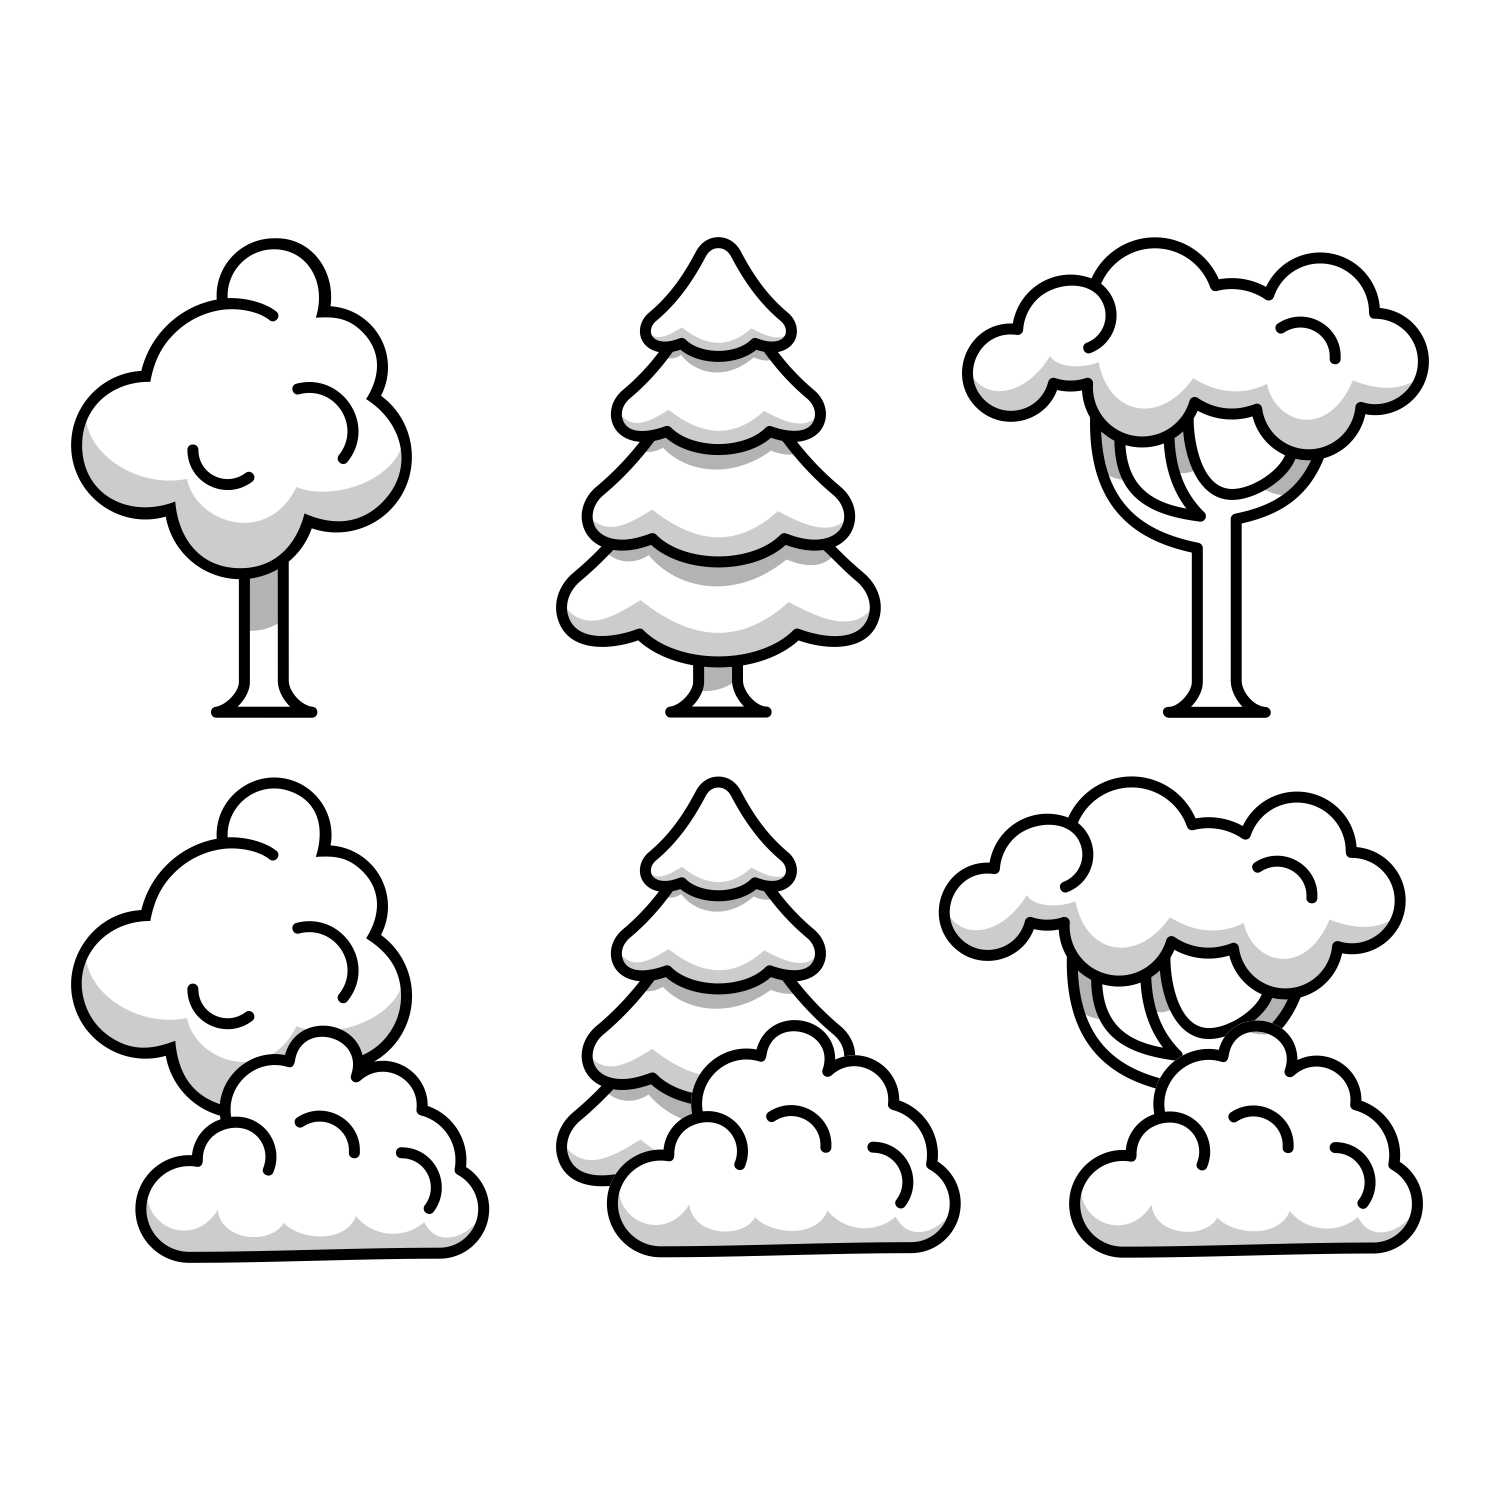 Tree illustration set